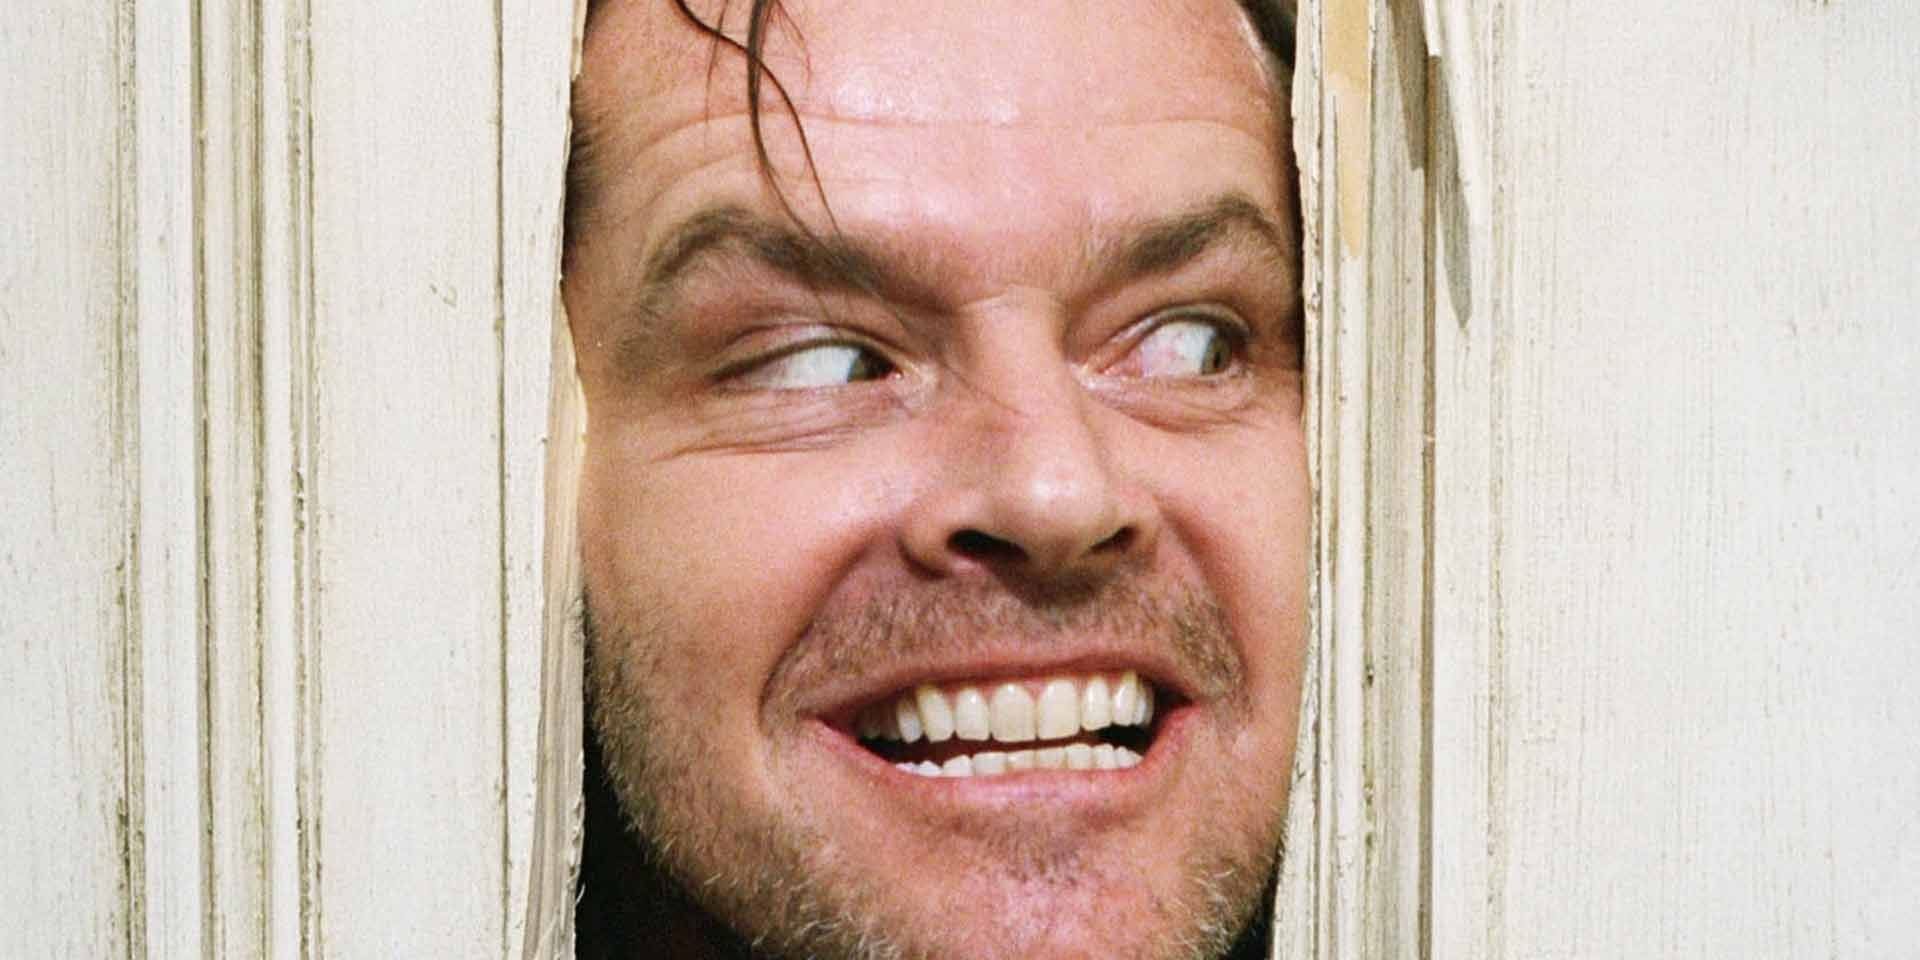 Jack Torrance breaking through a door in The Shining